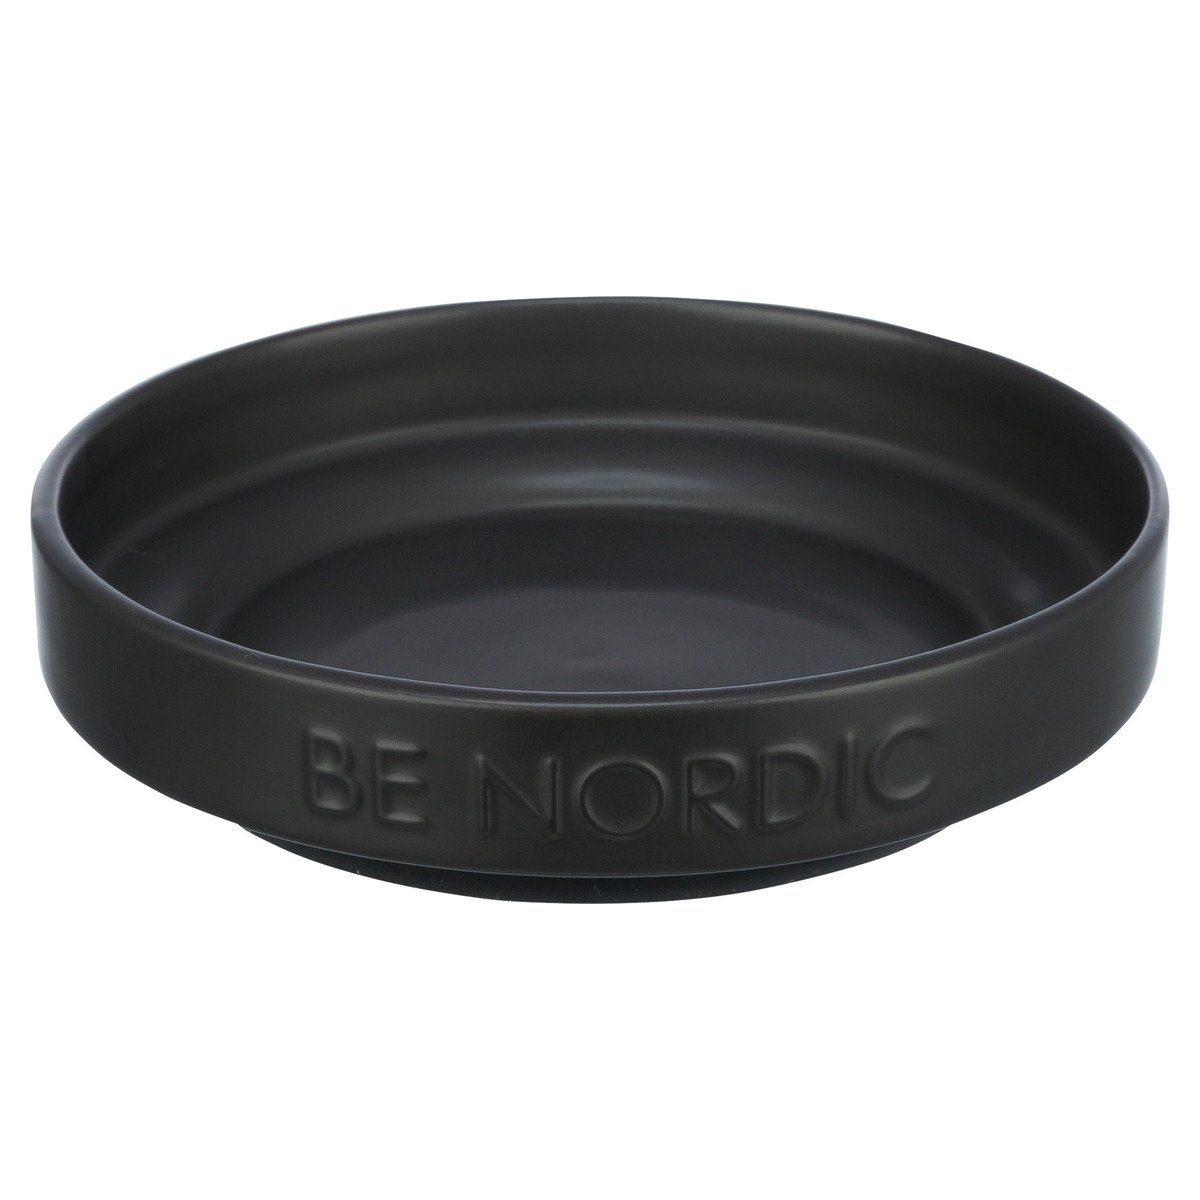 TRIXIE Futterbehälter BE NORDIC Keramiknapf schwarz für Hunde, Fassungsvermögen: 300 ml / flache Ausführung / Durchmesser: 16 cm